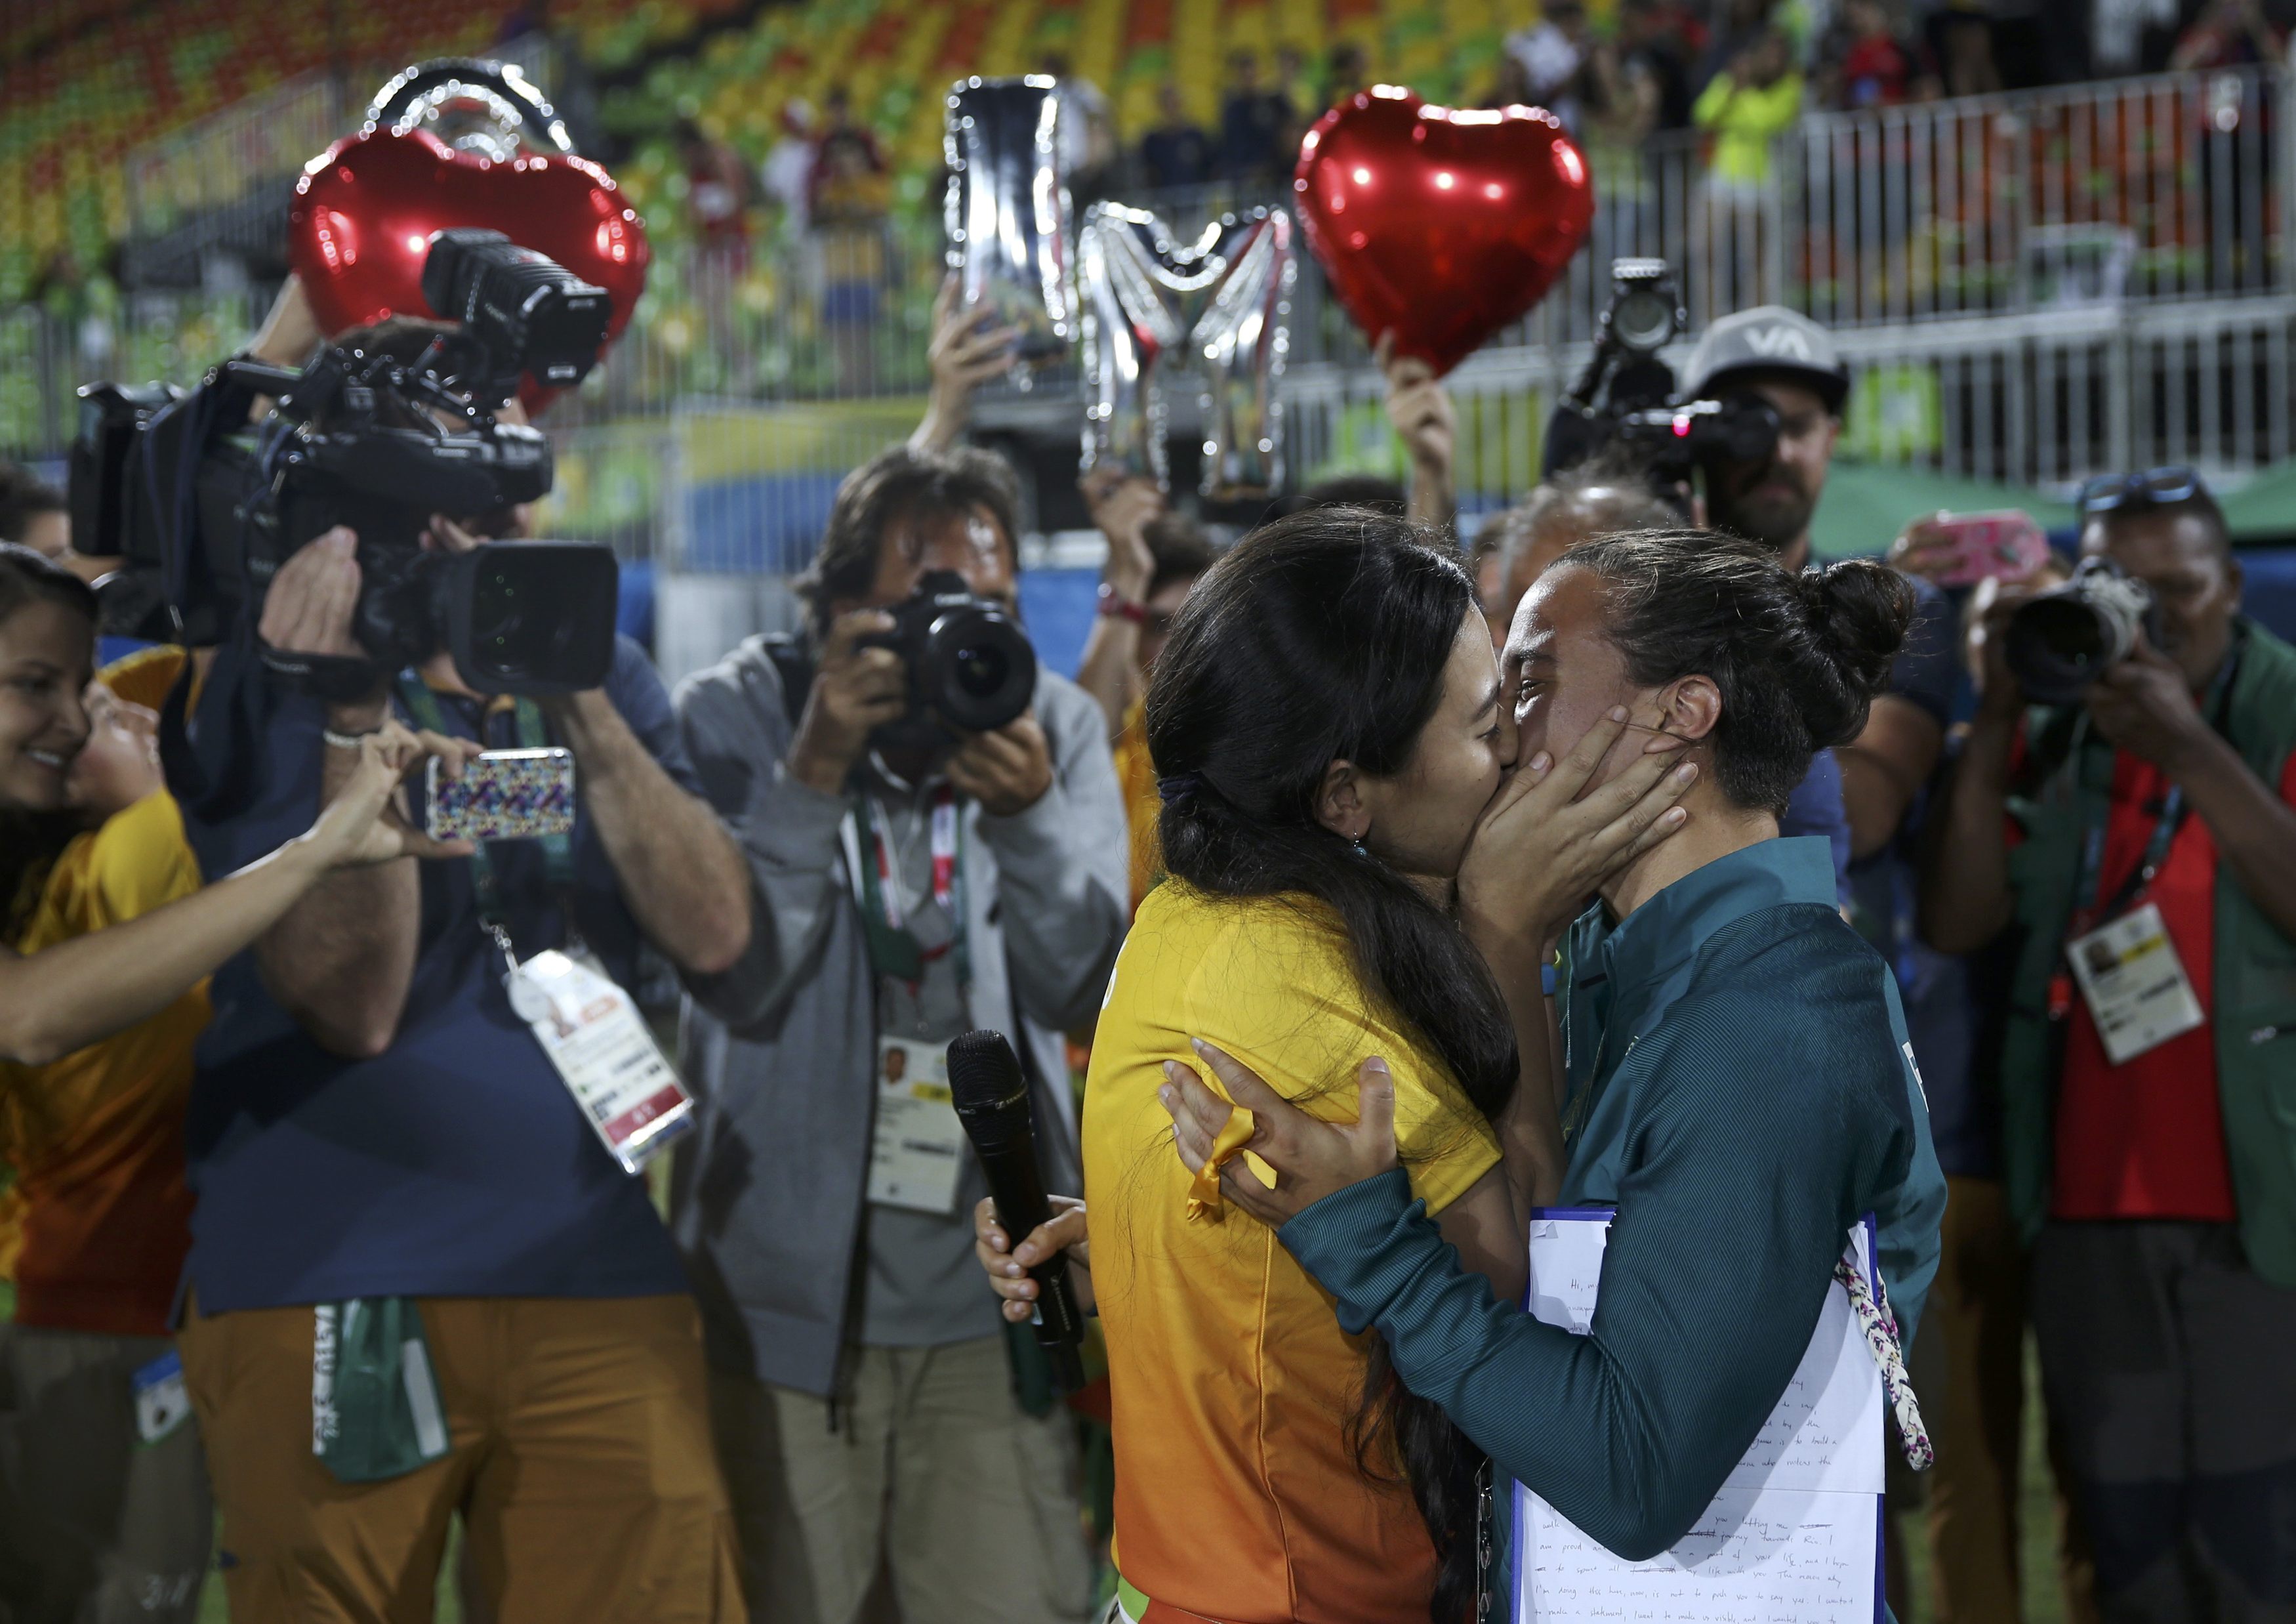 Ρίο: Παίκτρια ράγκμπι αποδέχτηκε πρόταση γάμου από εθελόντρια